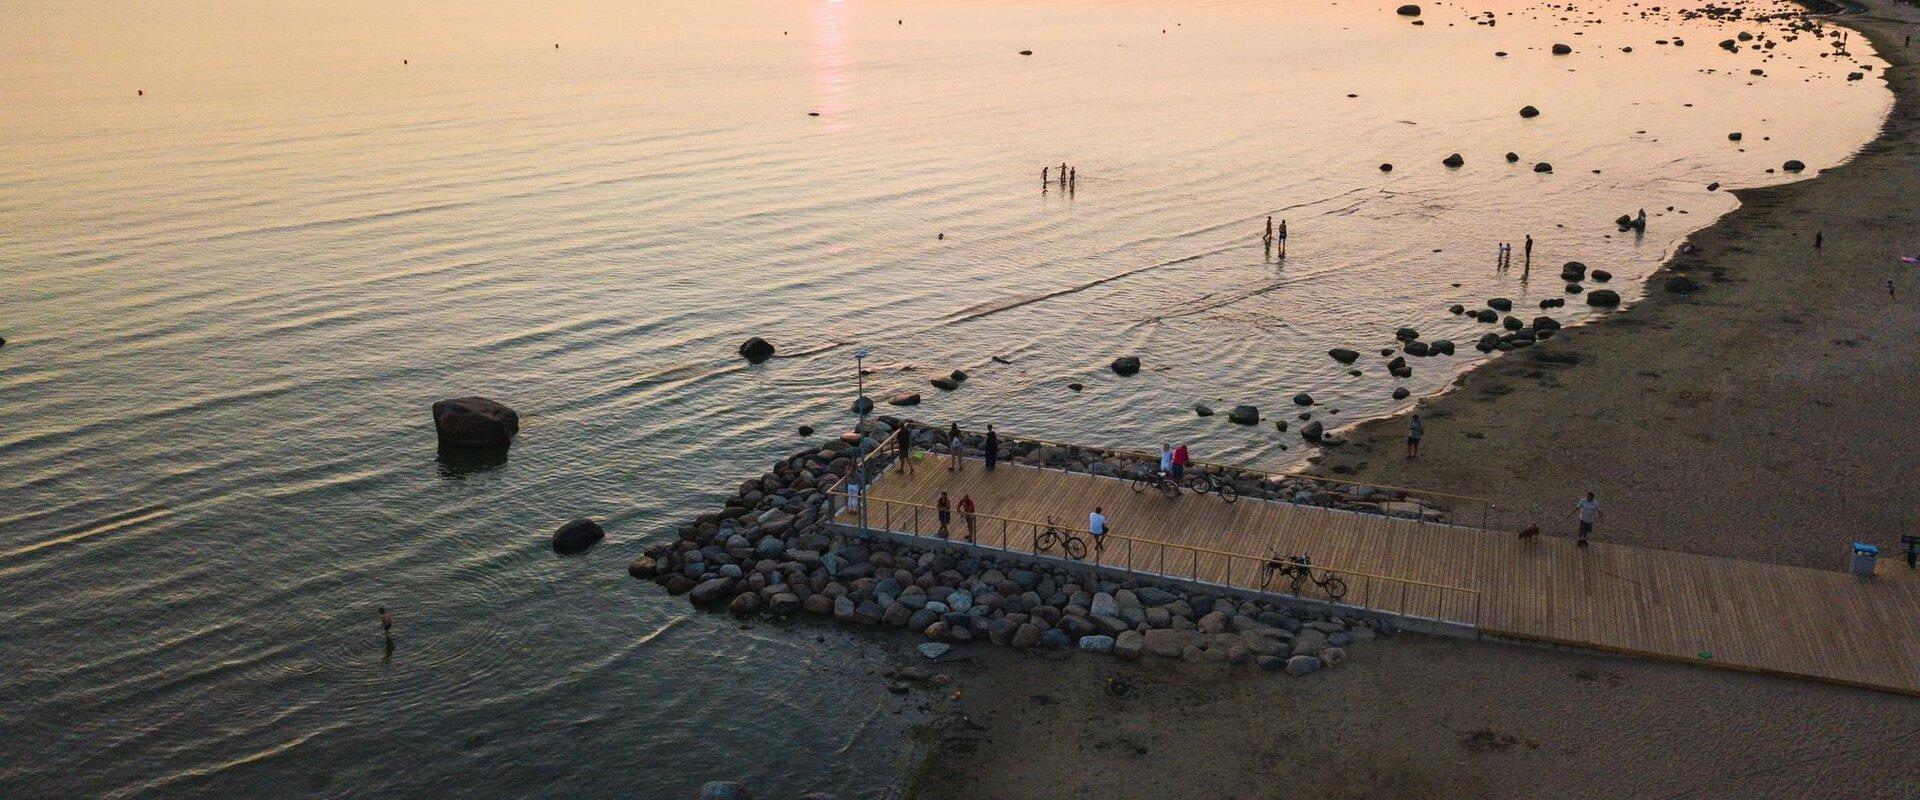 Der Strand von Haabneeme ist ein kleiner und friedlicher Sandstrand in Viimsi, der mit seinem sauberen, warmen Wasser Menschen anzieht, um sowohl Wass